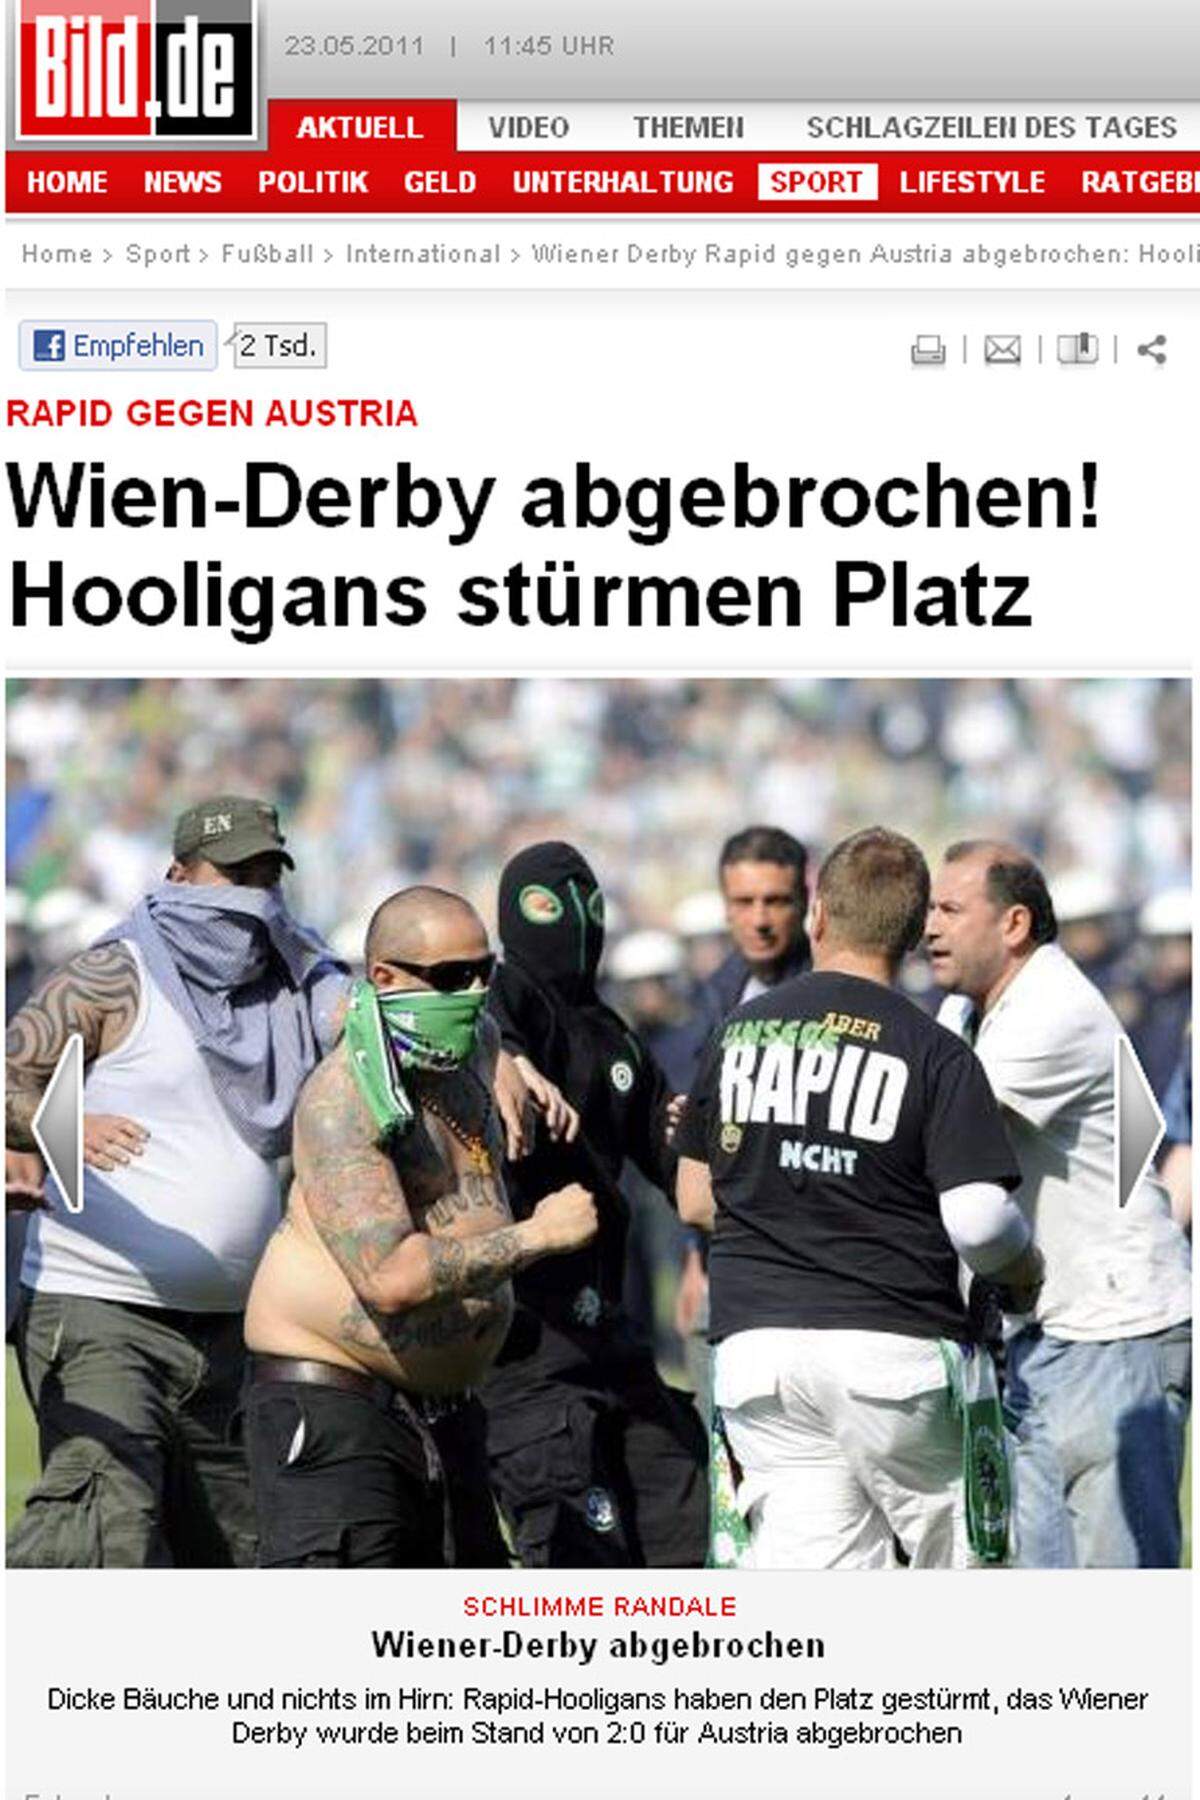 "Dicke Bäuche und nichts im Hirn: Rapid-Hooligans haben den Platz gestürmt, das Wiener Derby wurde beim Stand von 2:0 für Austria abgebrochen. Solche Szenen gehören nicht zum Fußball!"  bild.de